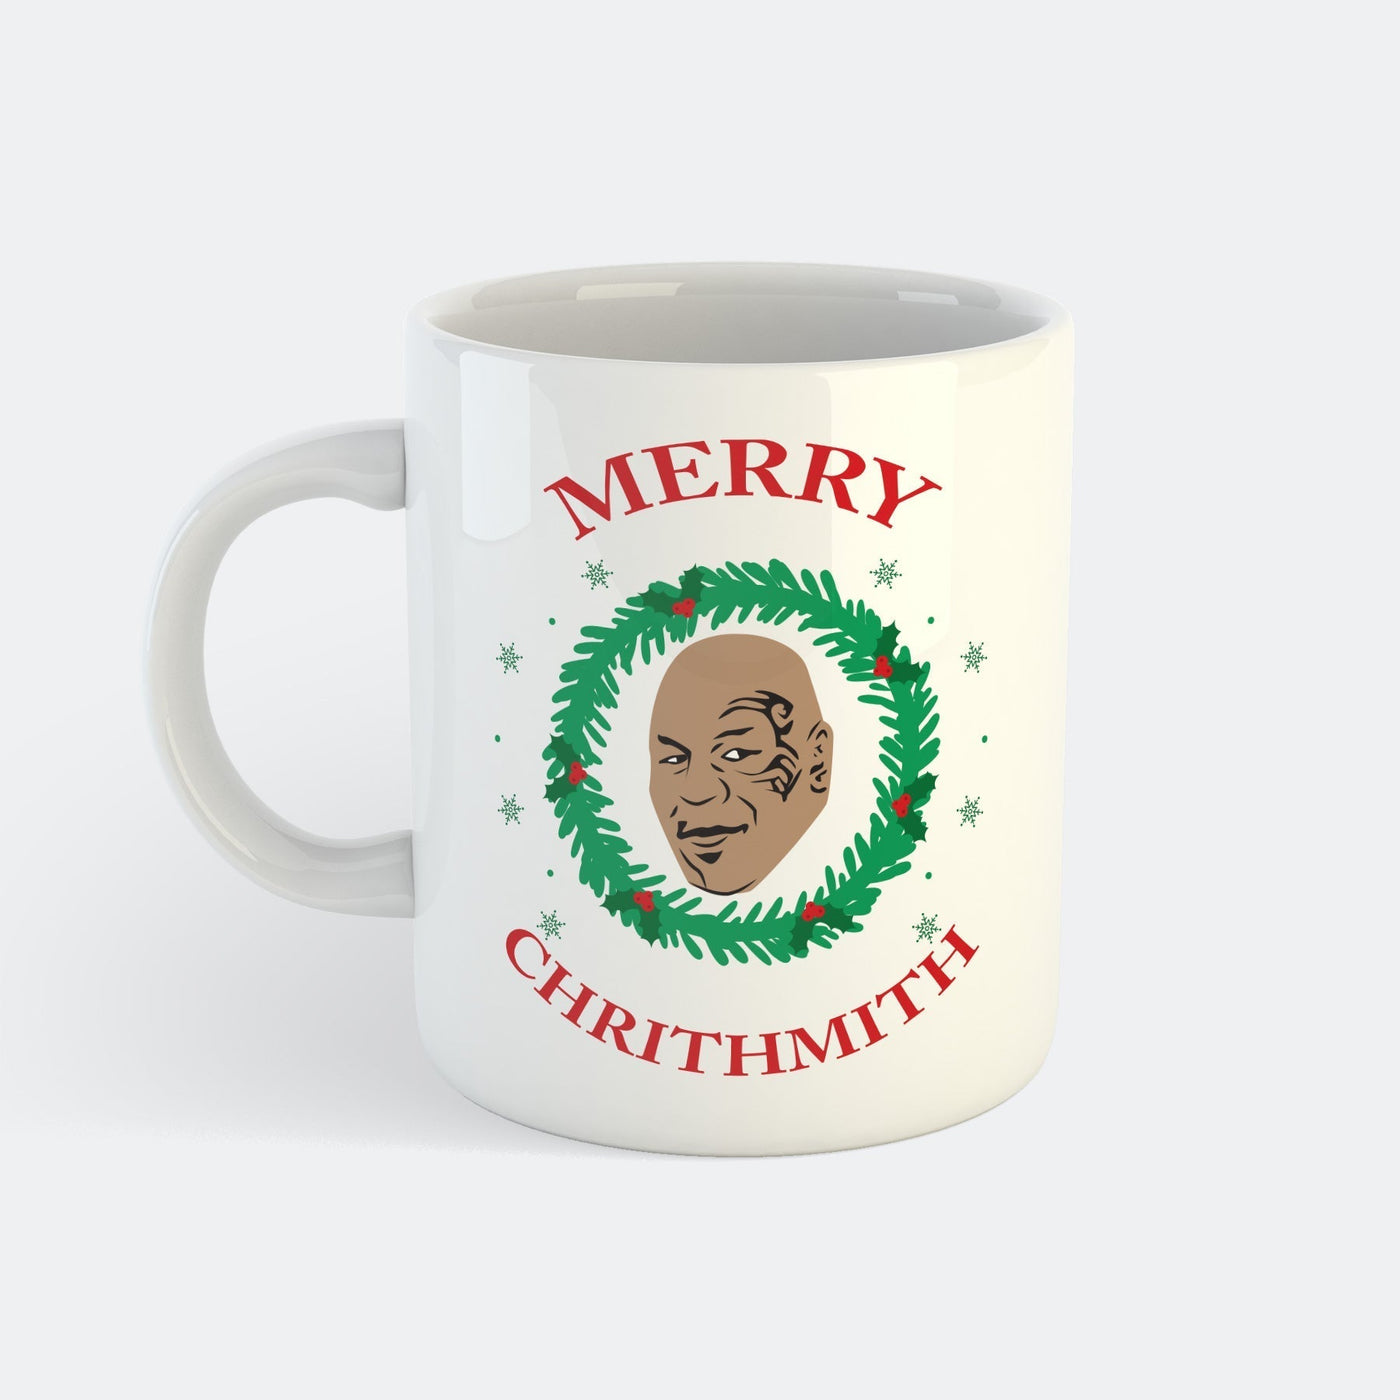 Merry Chrithmith Mugg